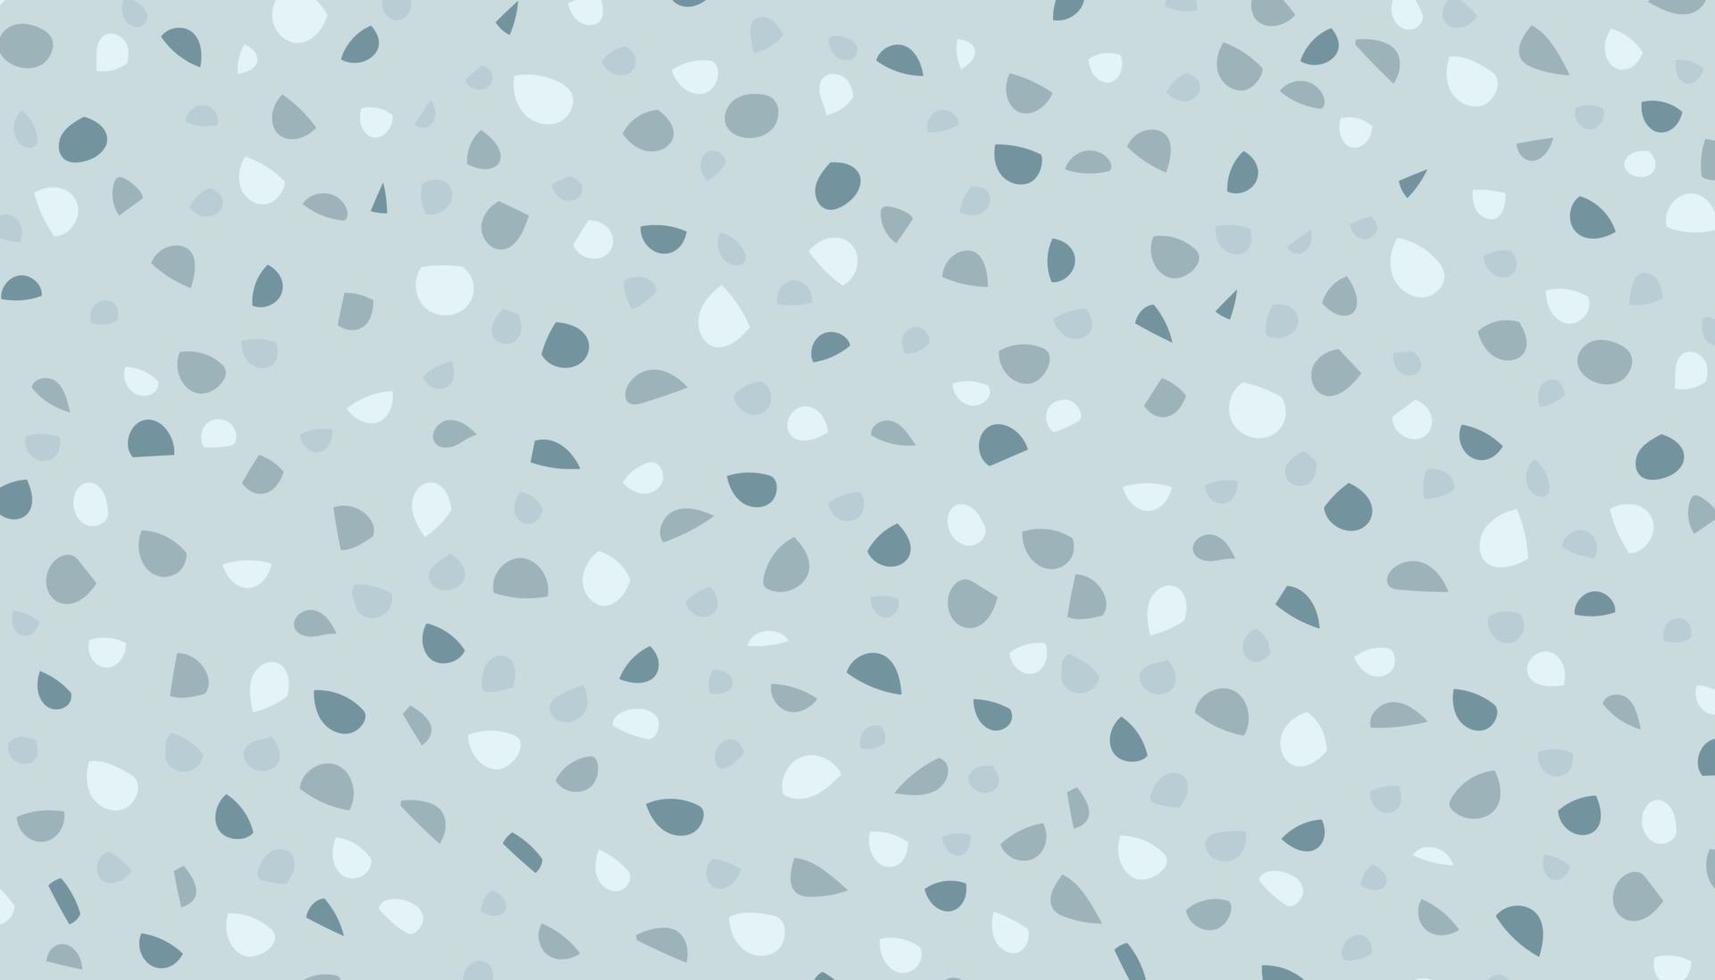 Terrazzo-Hintergrund blau und abstrakte einfache Vektorillustration vektor